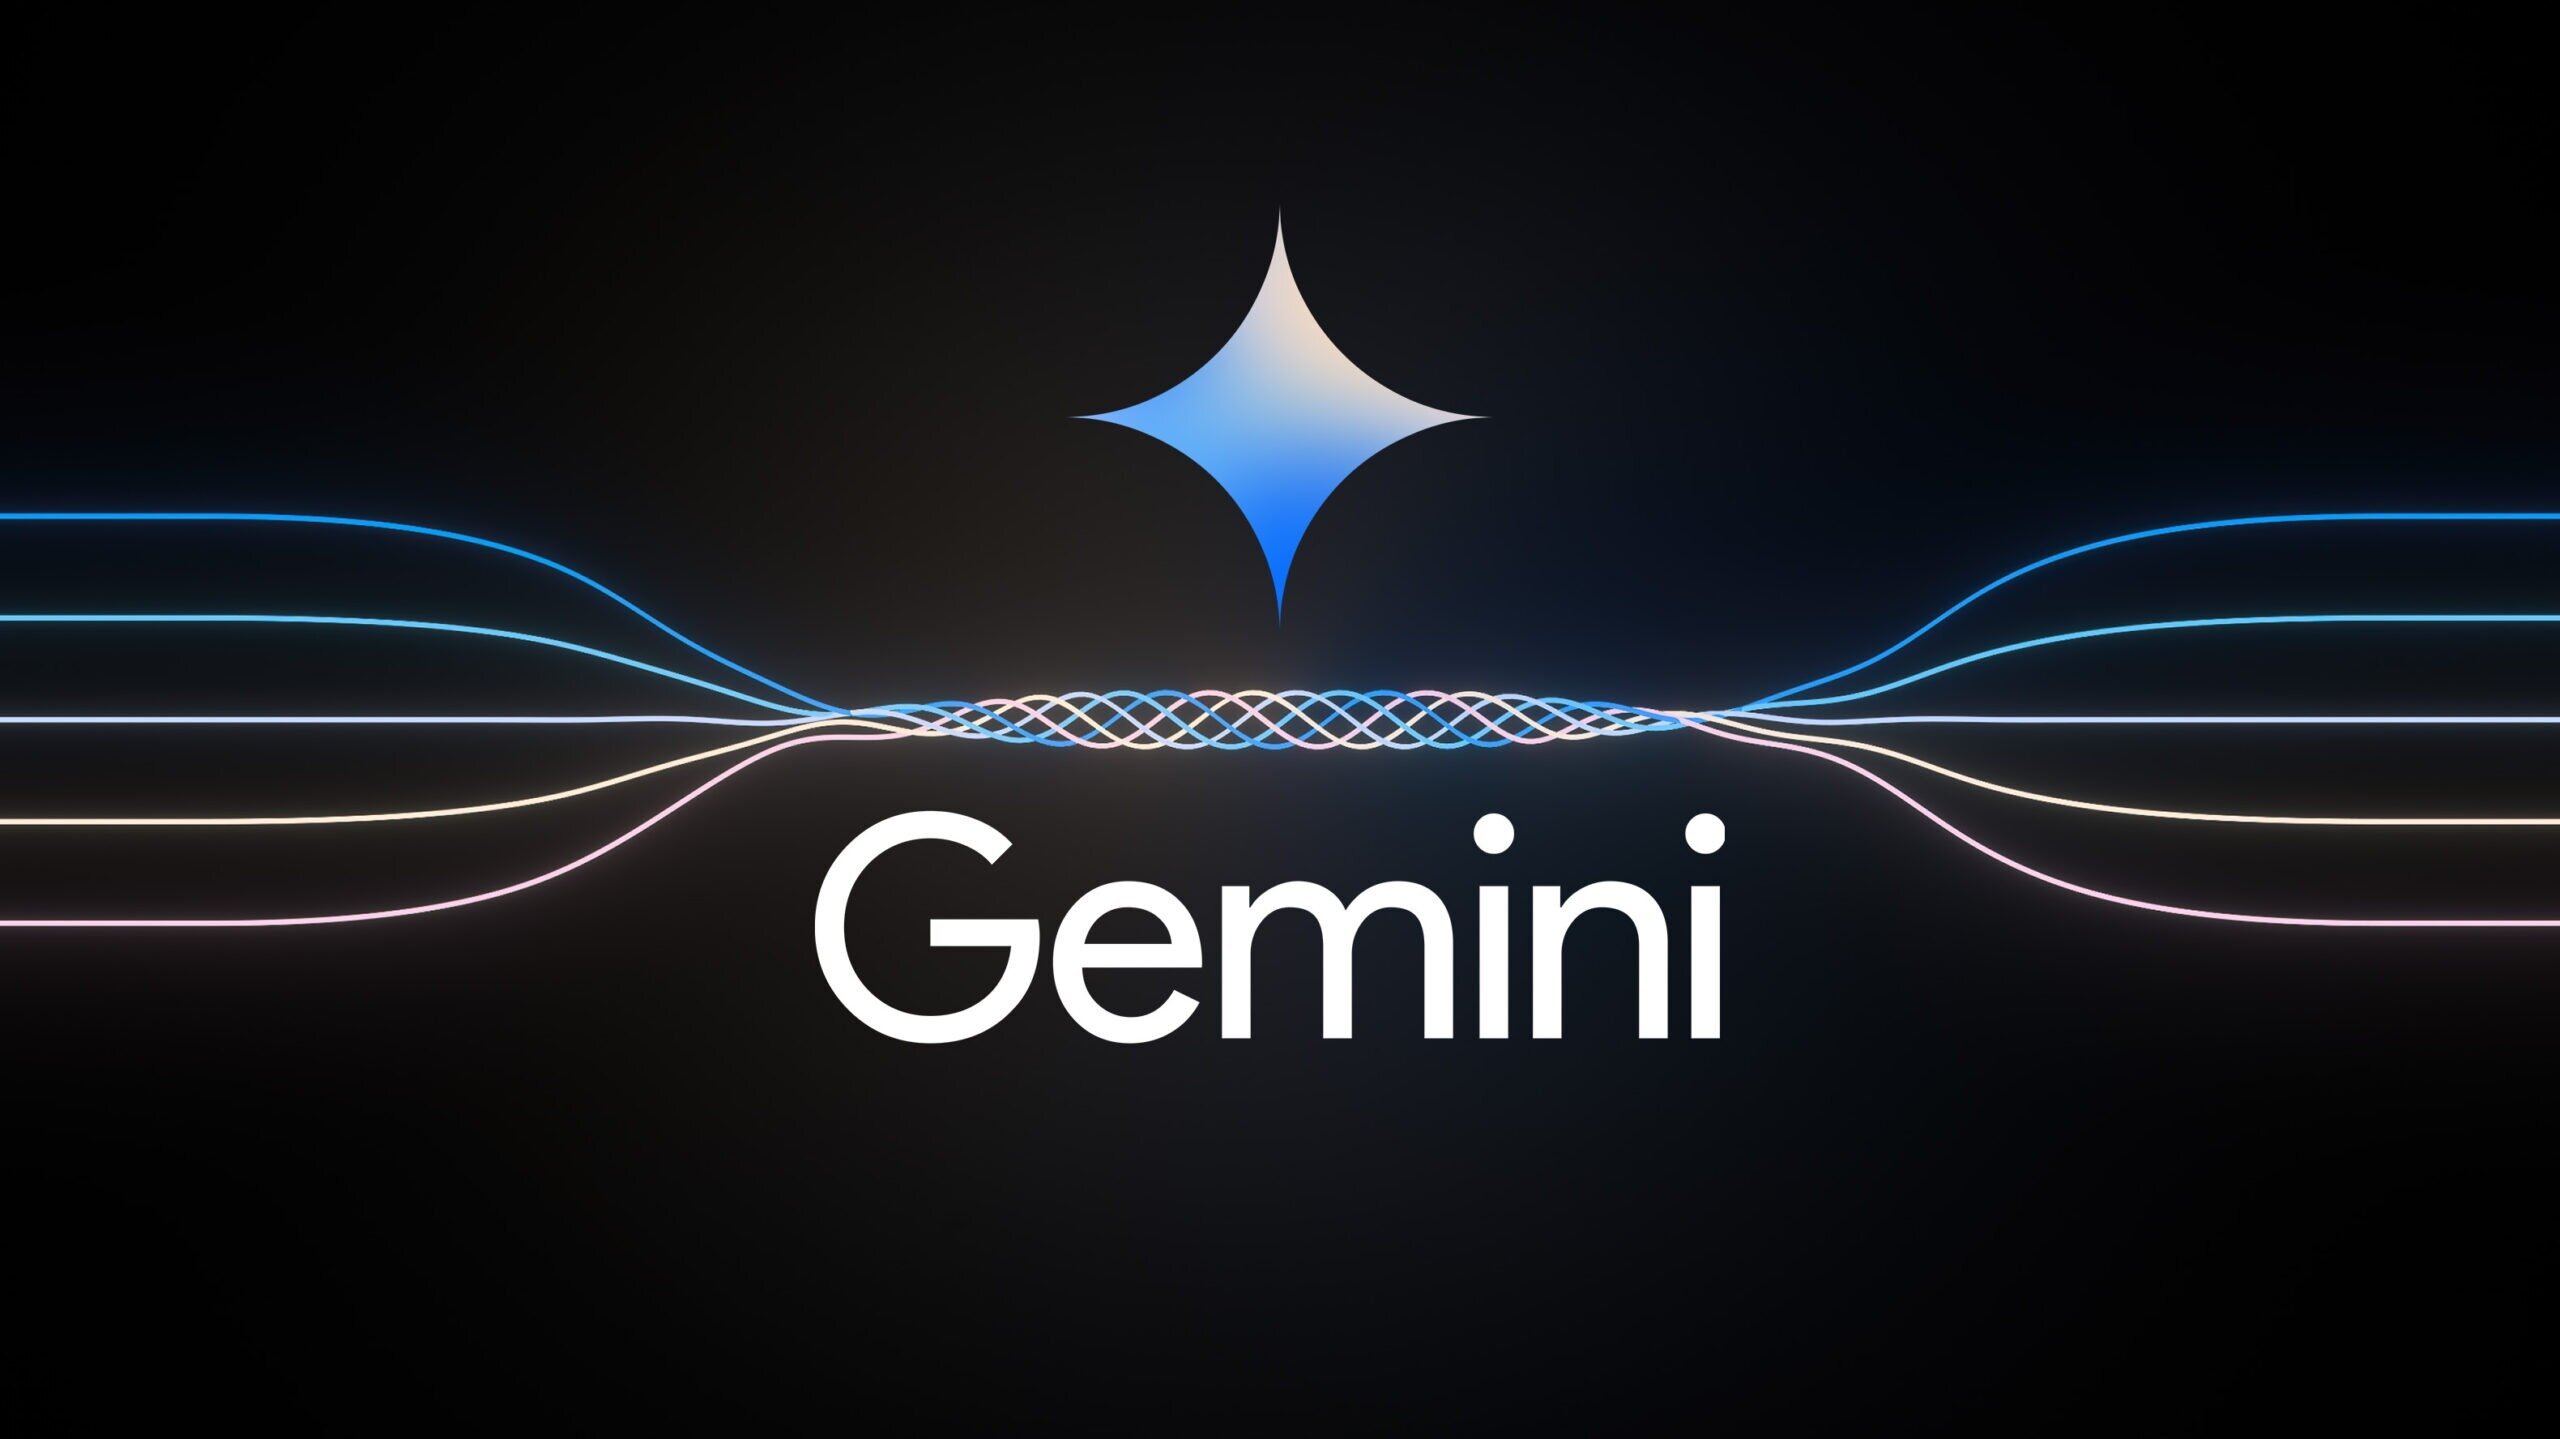 Περισσότερες πληροφορίες για "Σε αναστολή έθεσε η Google τη δυνατότητα δημιουργίας εικόνων από το Gemini"